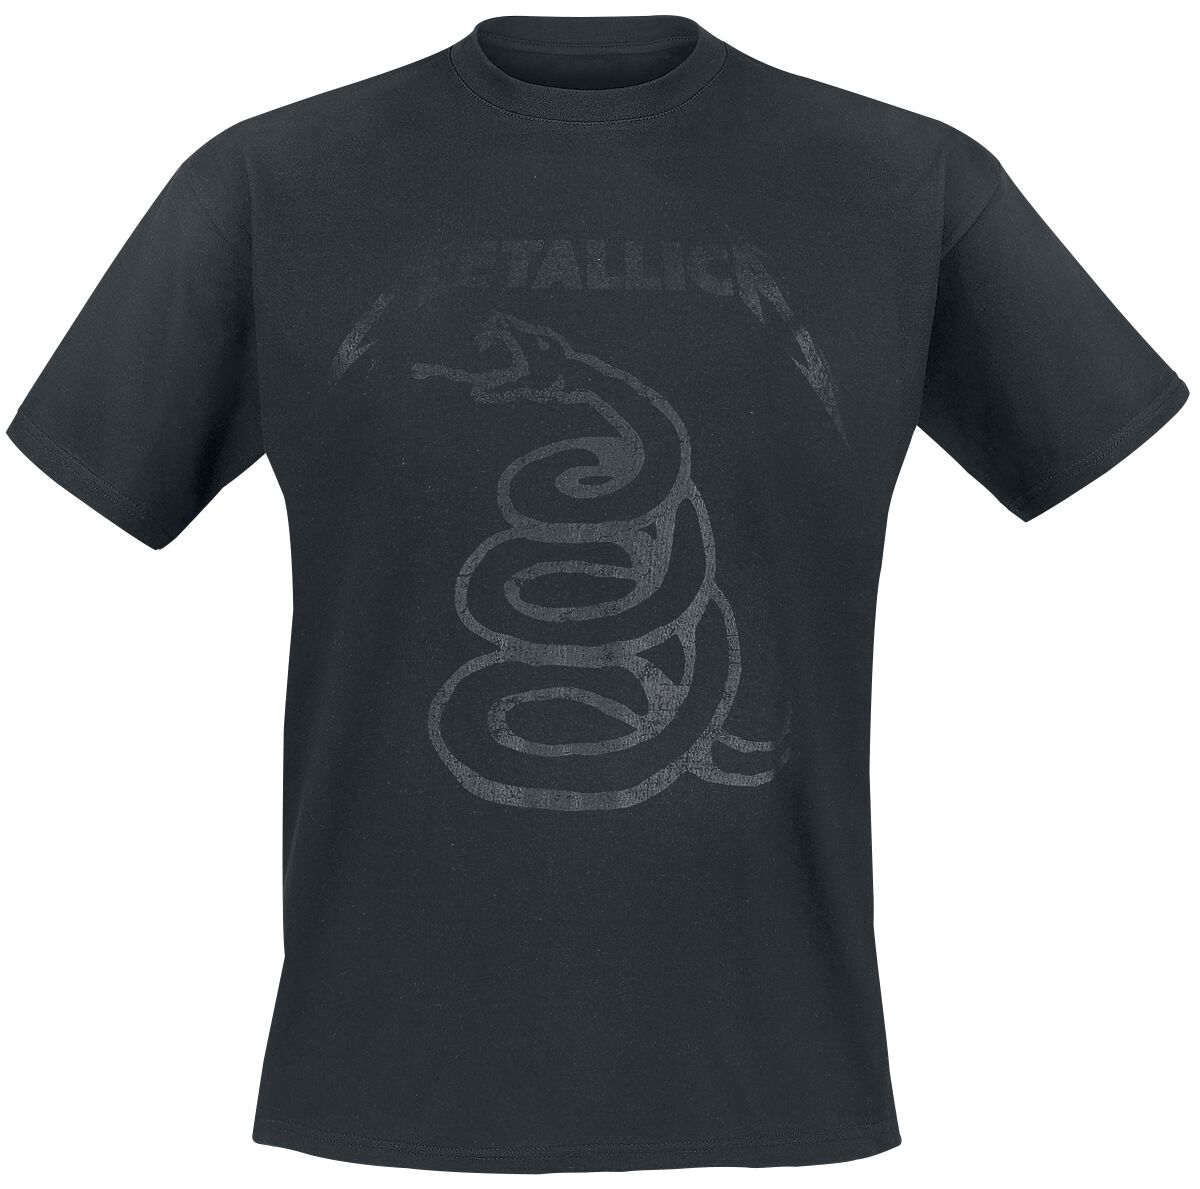 Metallica T-Shirt - Black Snake - S bis XXL - für Männer - Größe XXL - schwarz  - Lizenziertes Merchandise!